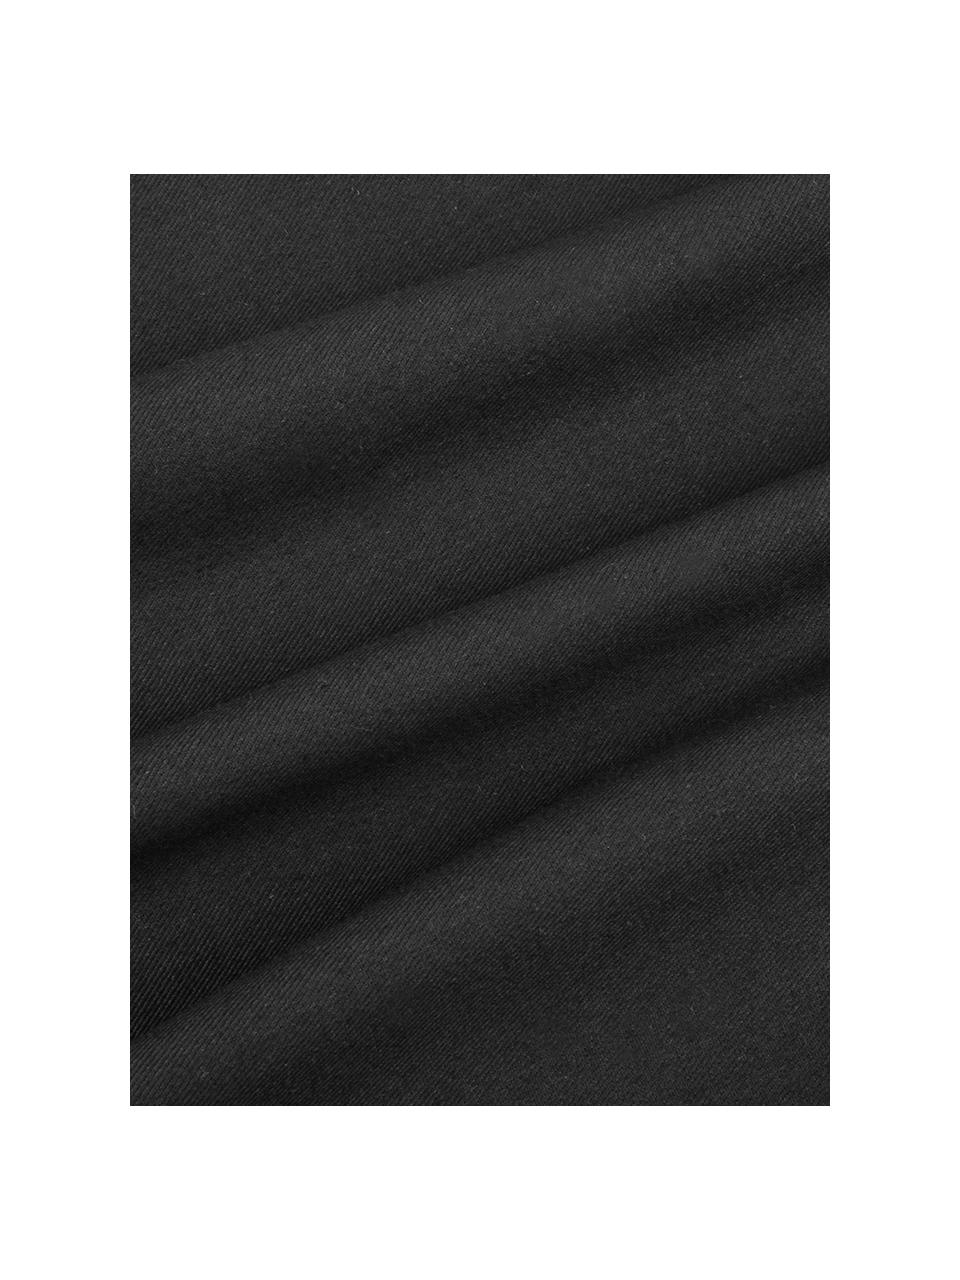 Katoenen kussenhoes Mads in zwart, 100% katoen, Zwart, 30 x 50 cm